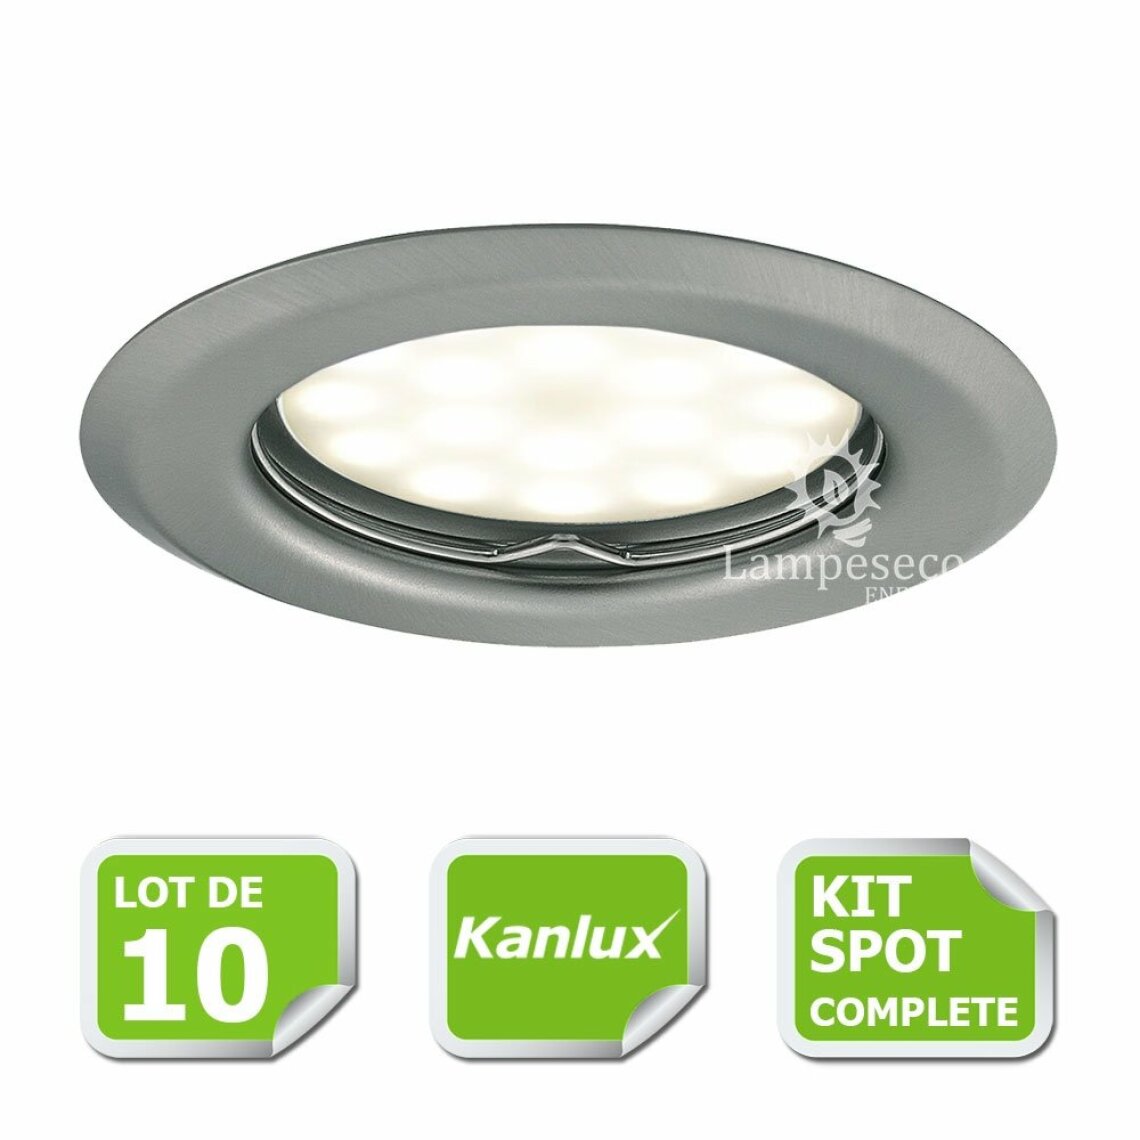 Kanlux - Kit complete de 10 Spots encastrable chrome mat marque Kanlux avec GU10 LED 5W Blanc Chaud - Boîtes d'encastrement